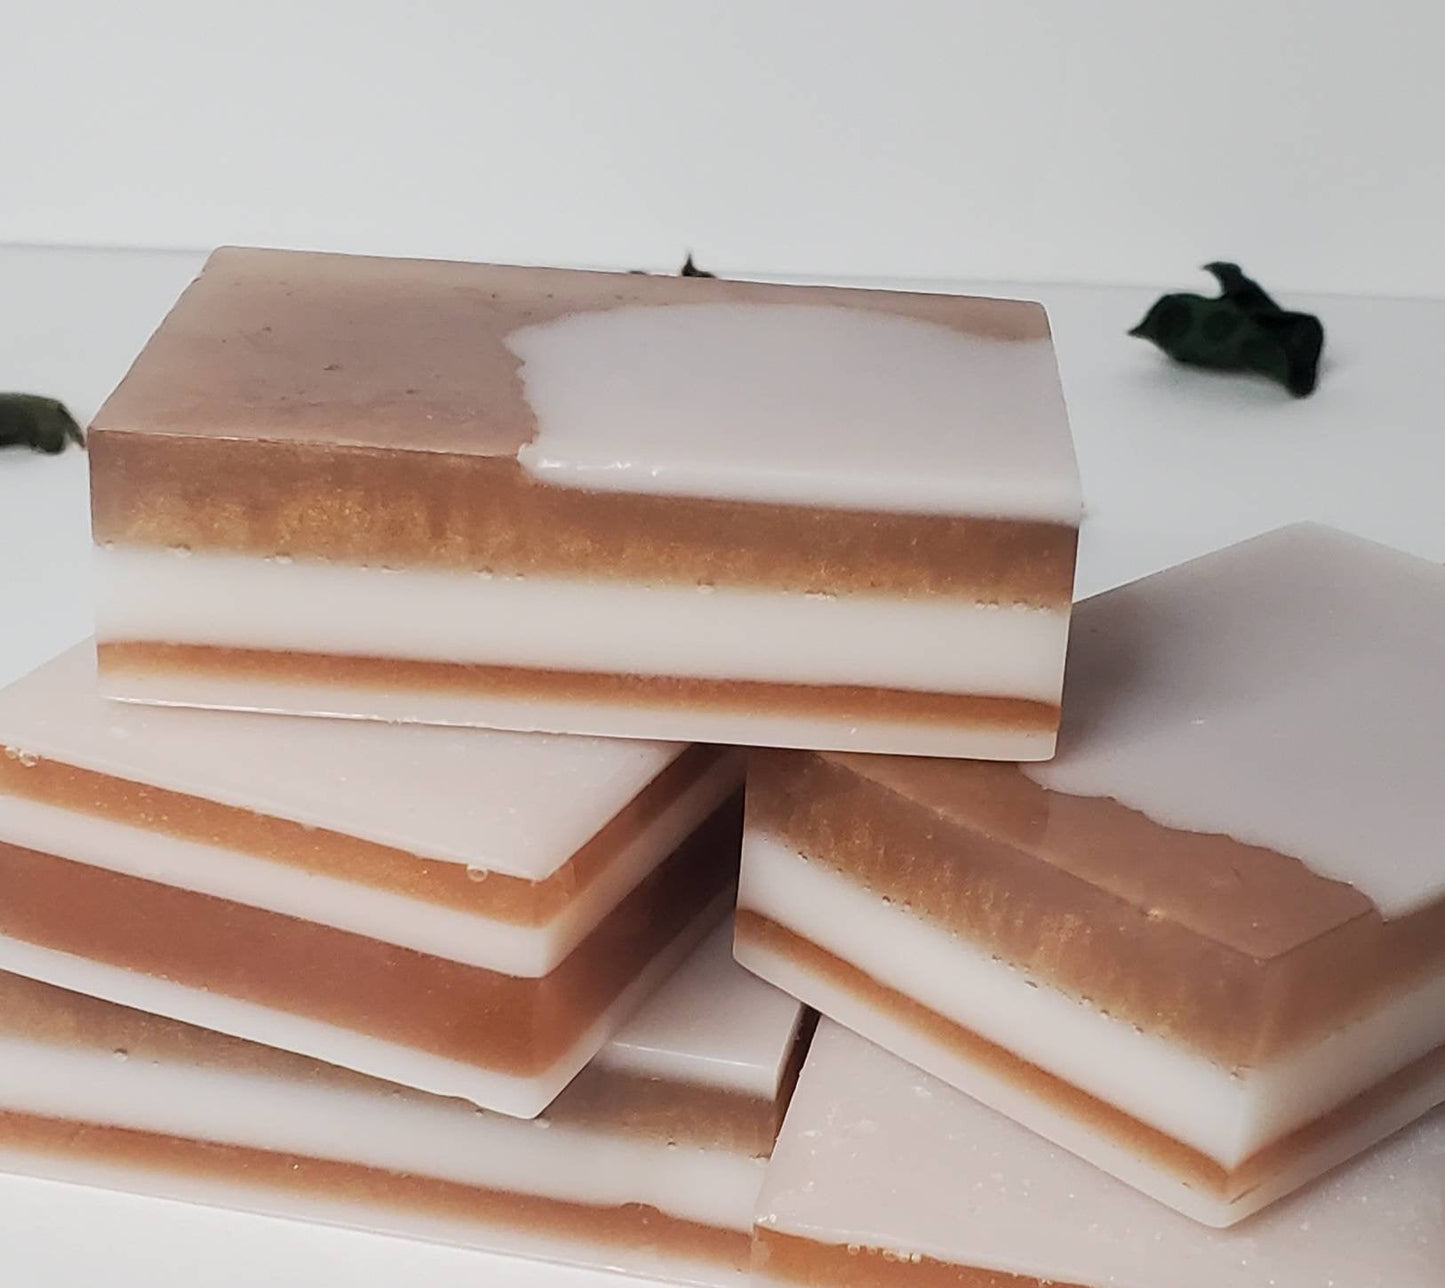 Almond Coconut Milk Natural Soap Bars